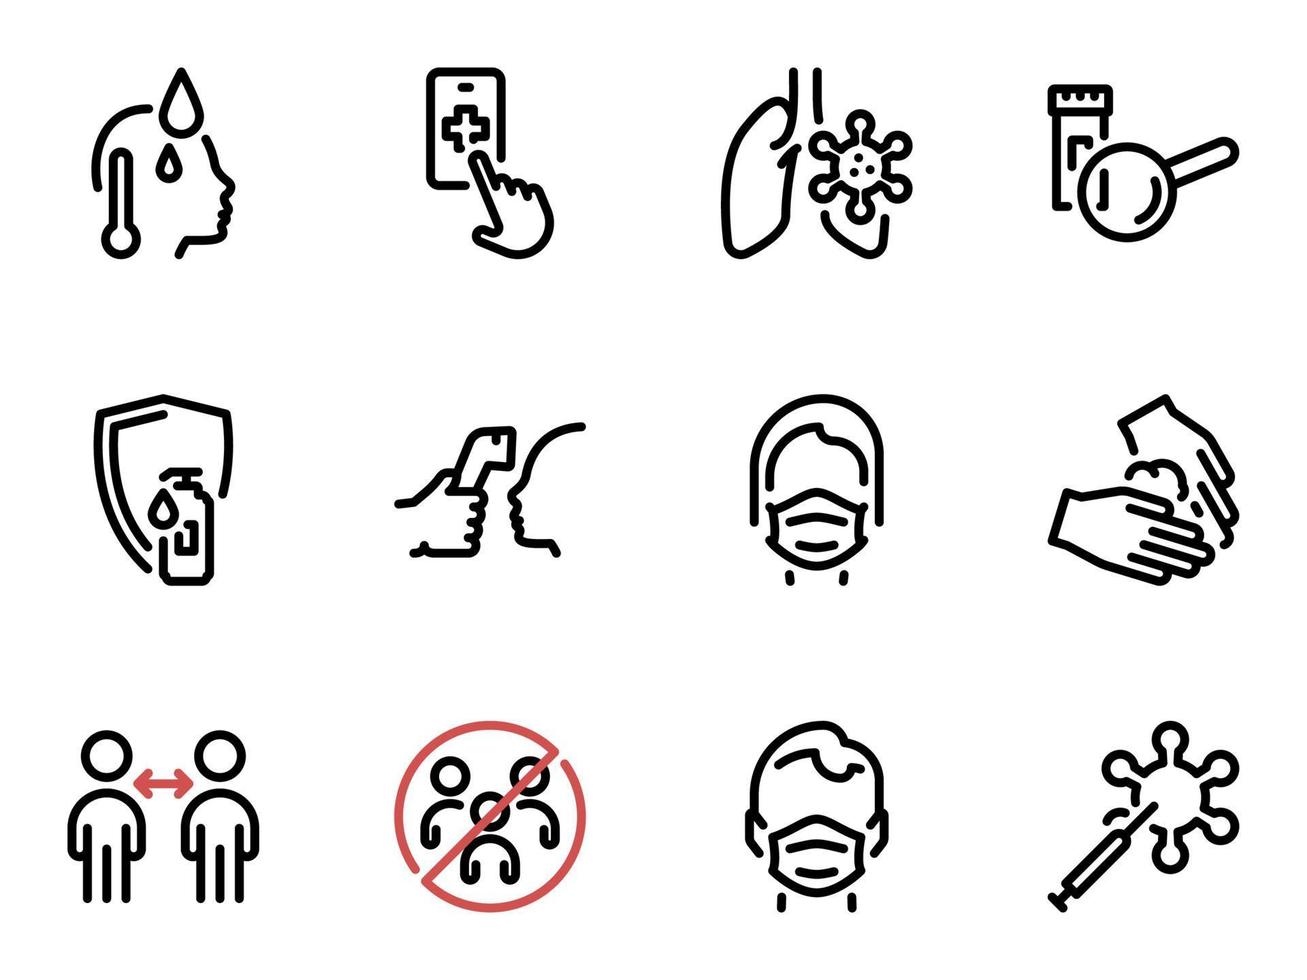 conjunto de ícones do vetor preto, isolados contra um fundo branco. ilustração plana em um tema coronavírus, ajuda, pesquisa e proteção